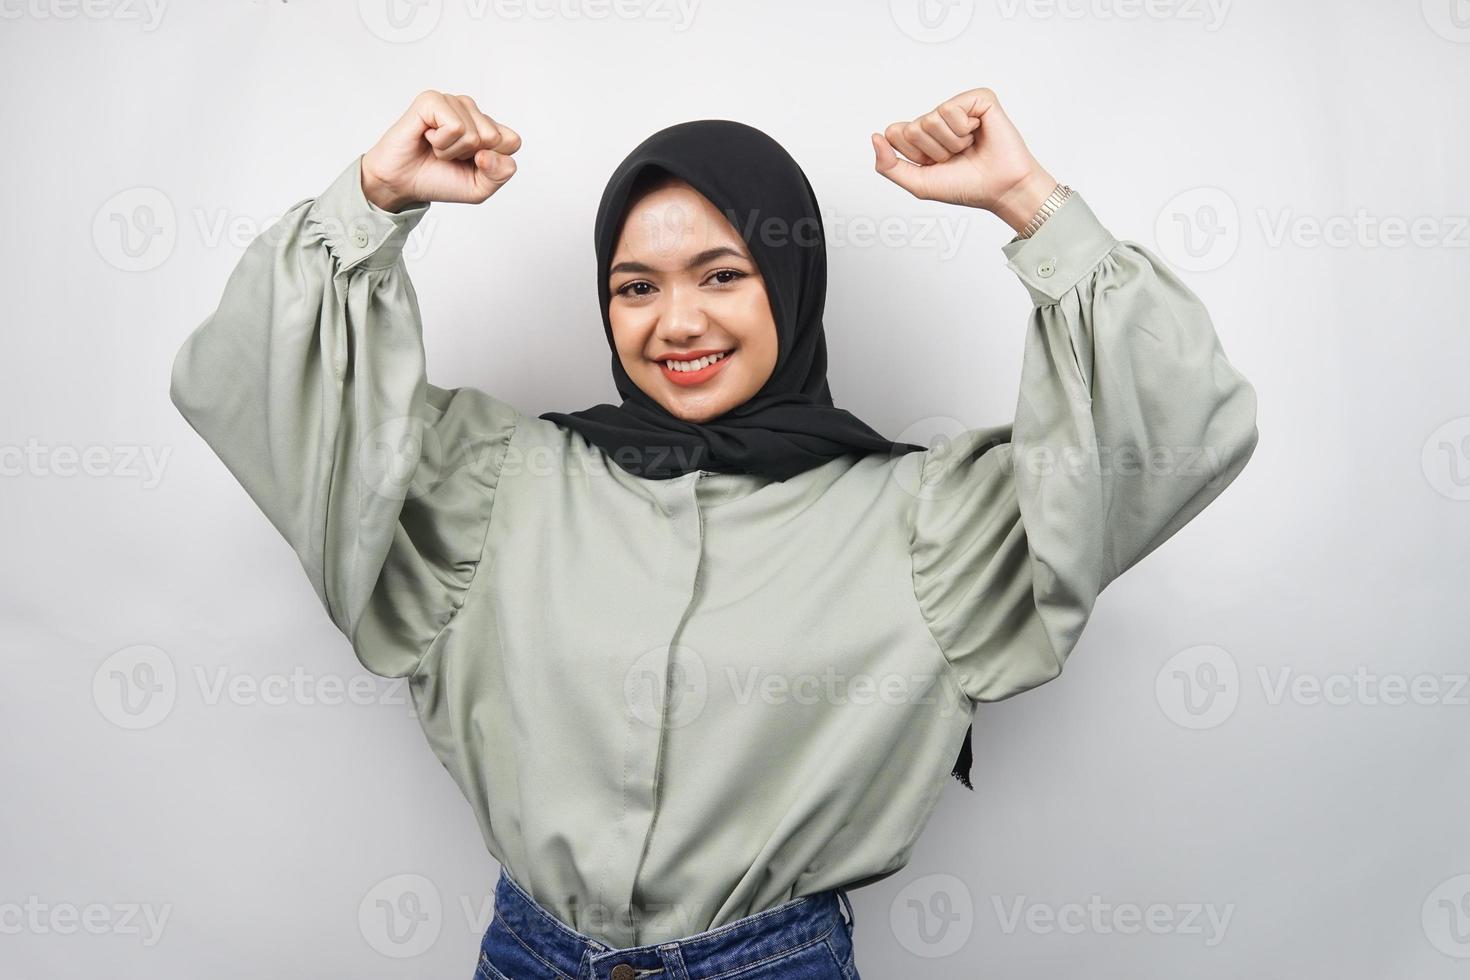 belle jeune femme musulmane asiatique confiante et souriante, avec le poing fermé, coups de poing, signe pour l'esprit, combats, signe de victoire, isolé sur fond gris photo